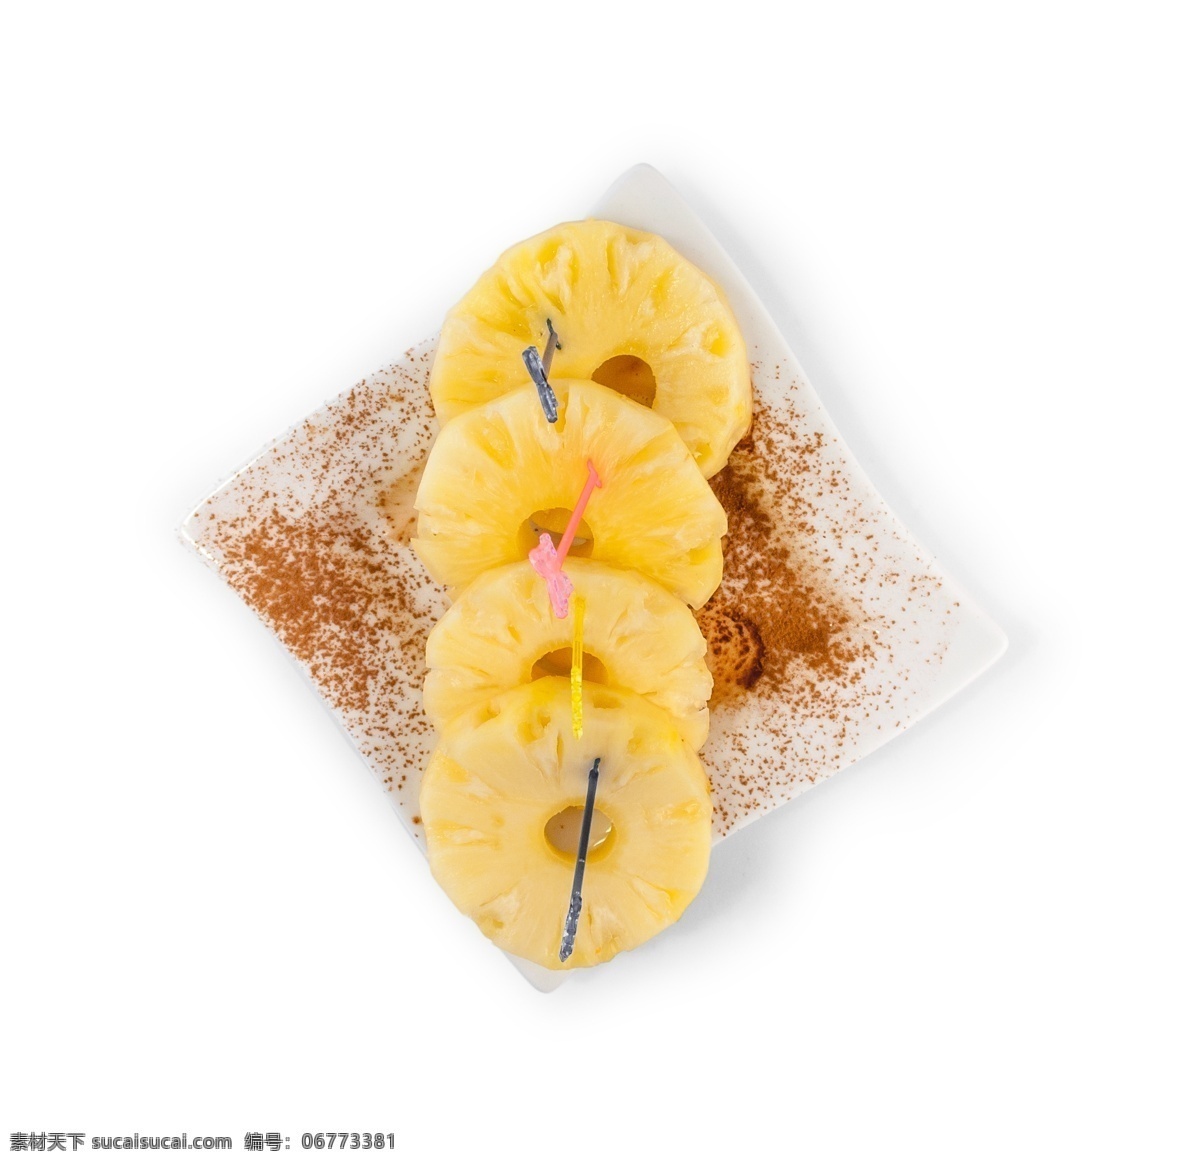 俯视图 新鲜 一片片 菠萝 片 源文件 黄色 话梅粉 圆形 水果 装饰图案